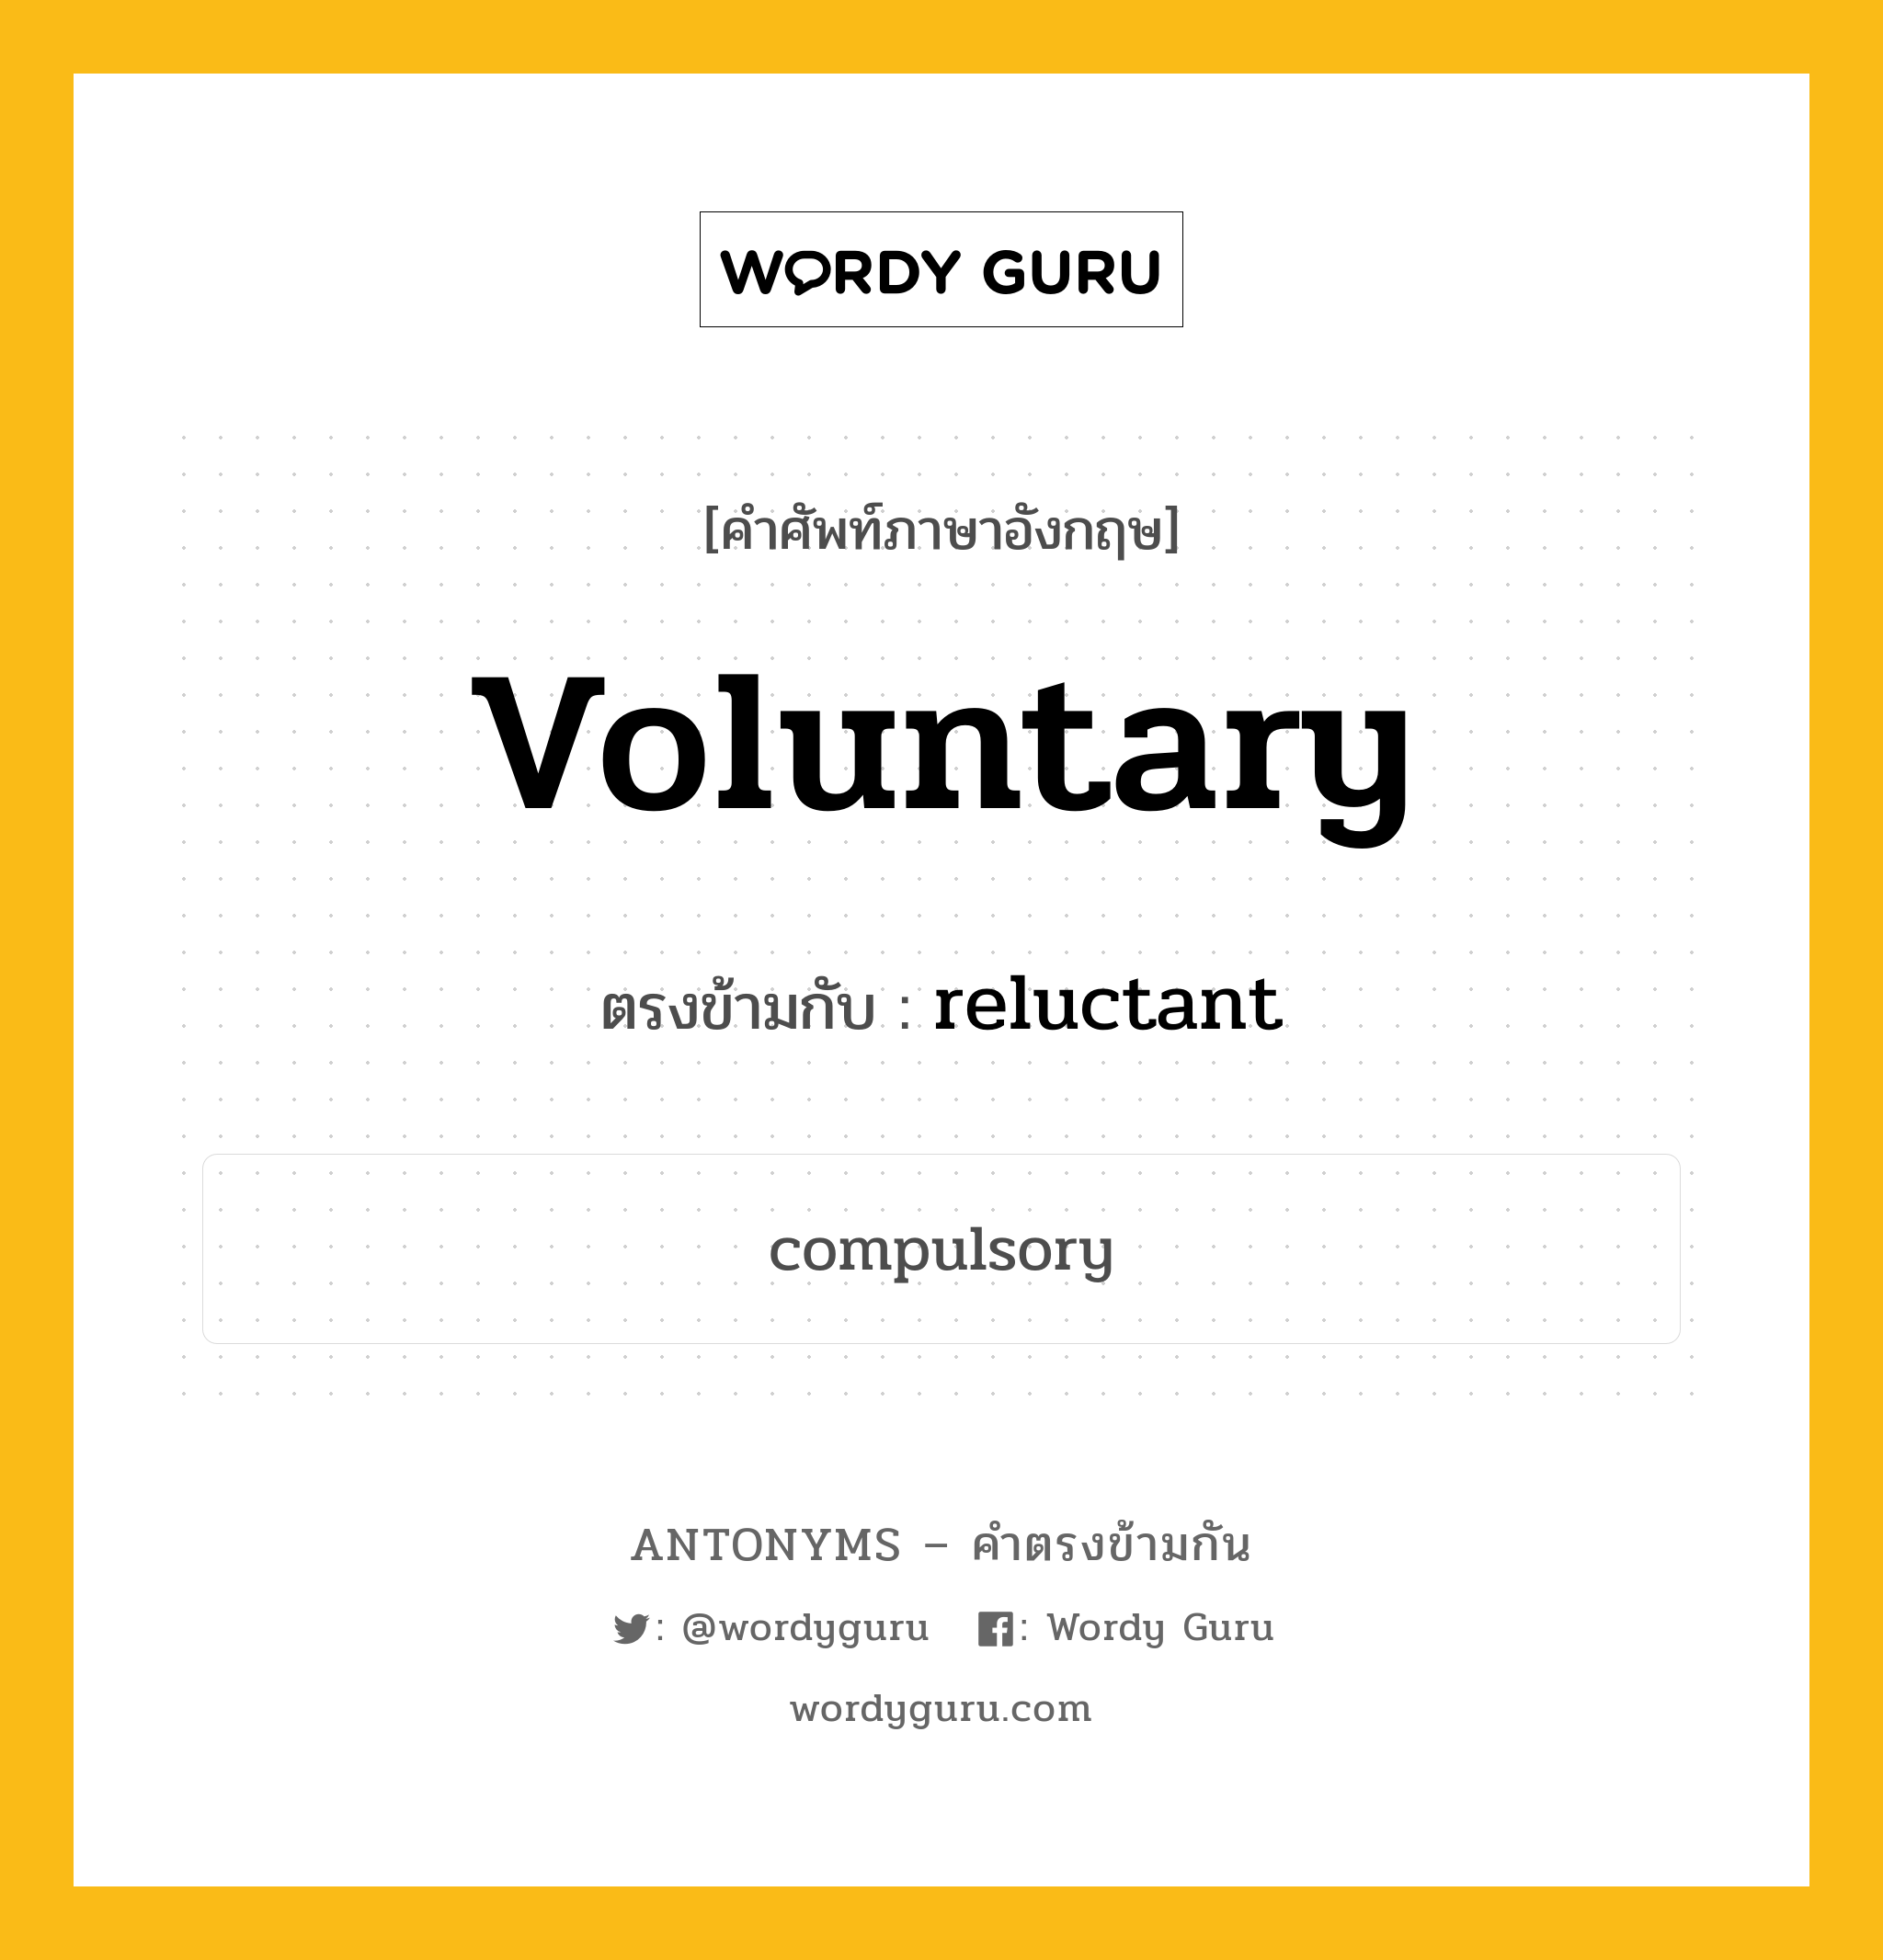 voluntary เป็นคำตรงข้ามกับคำไหนบ้าง?, คำศัพท์ภาษาอังกฤษ voluntary ตรงข้ามกับ reluctant หมวด reluctant